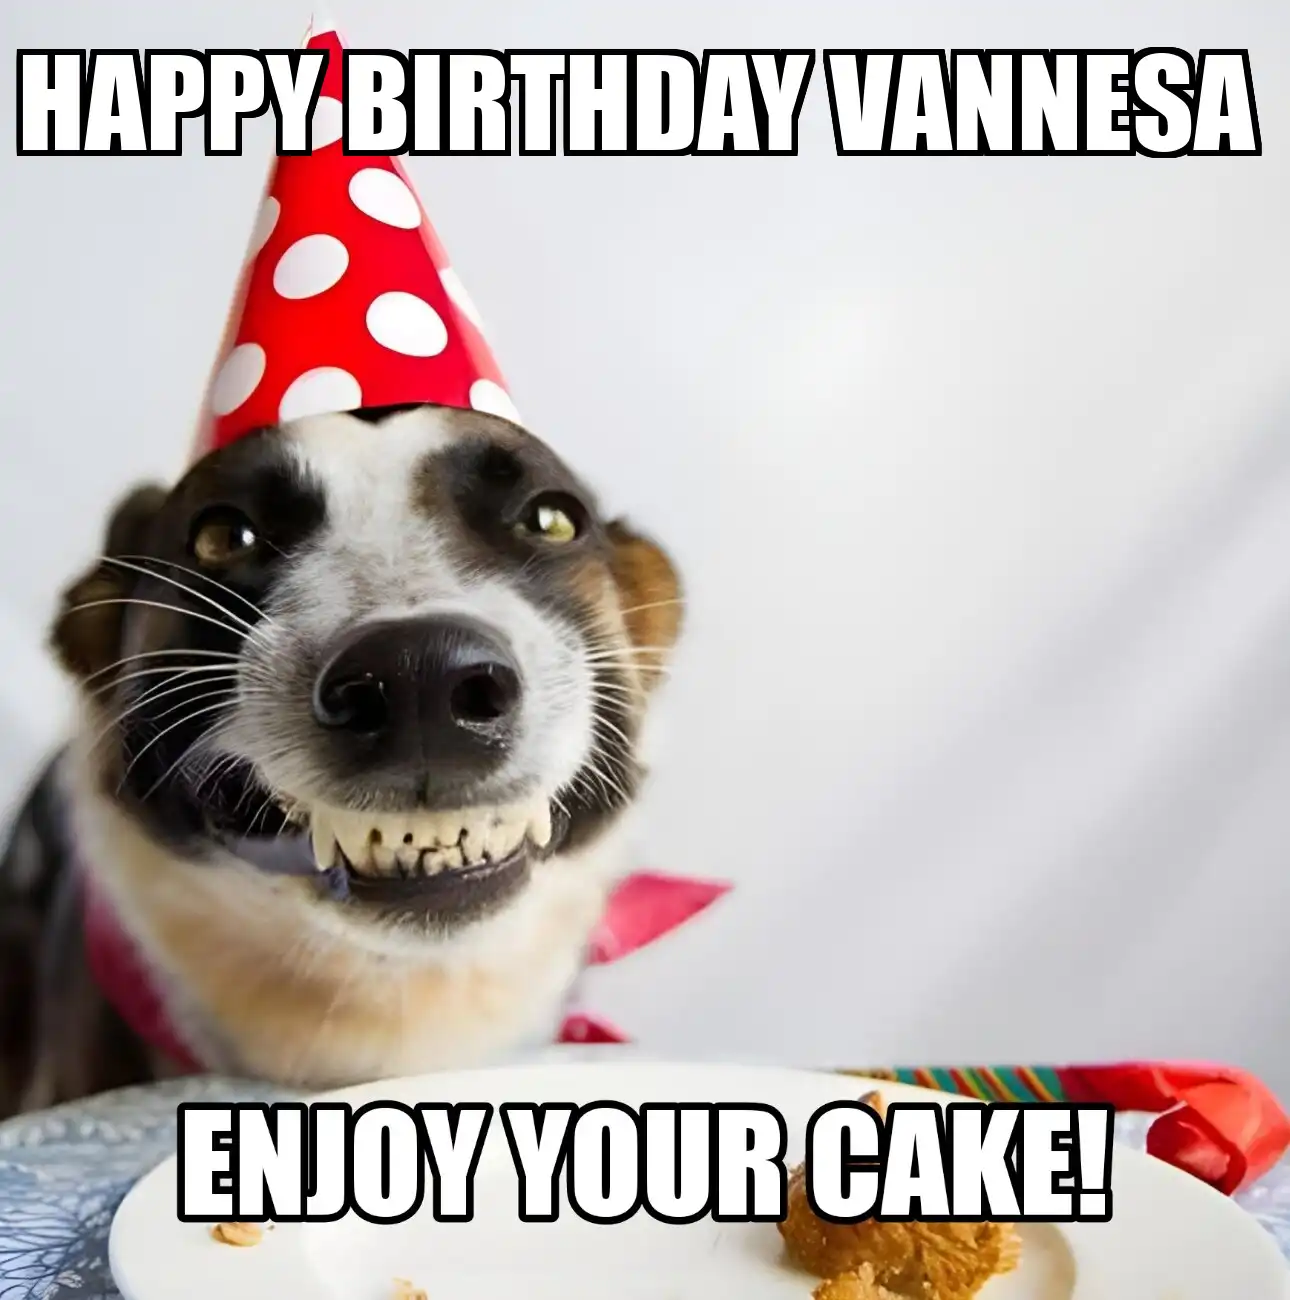 Happy Birthday Vannesa Enjoy Your Cake Dog Meme